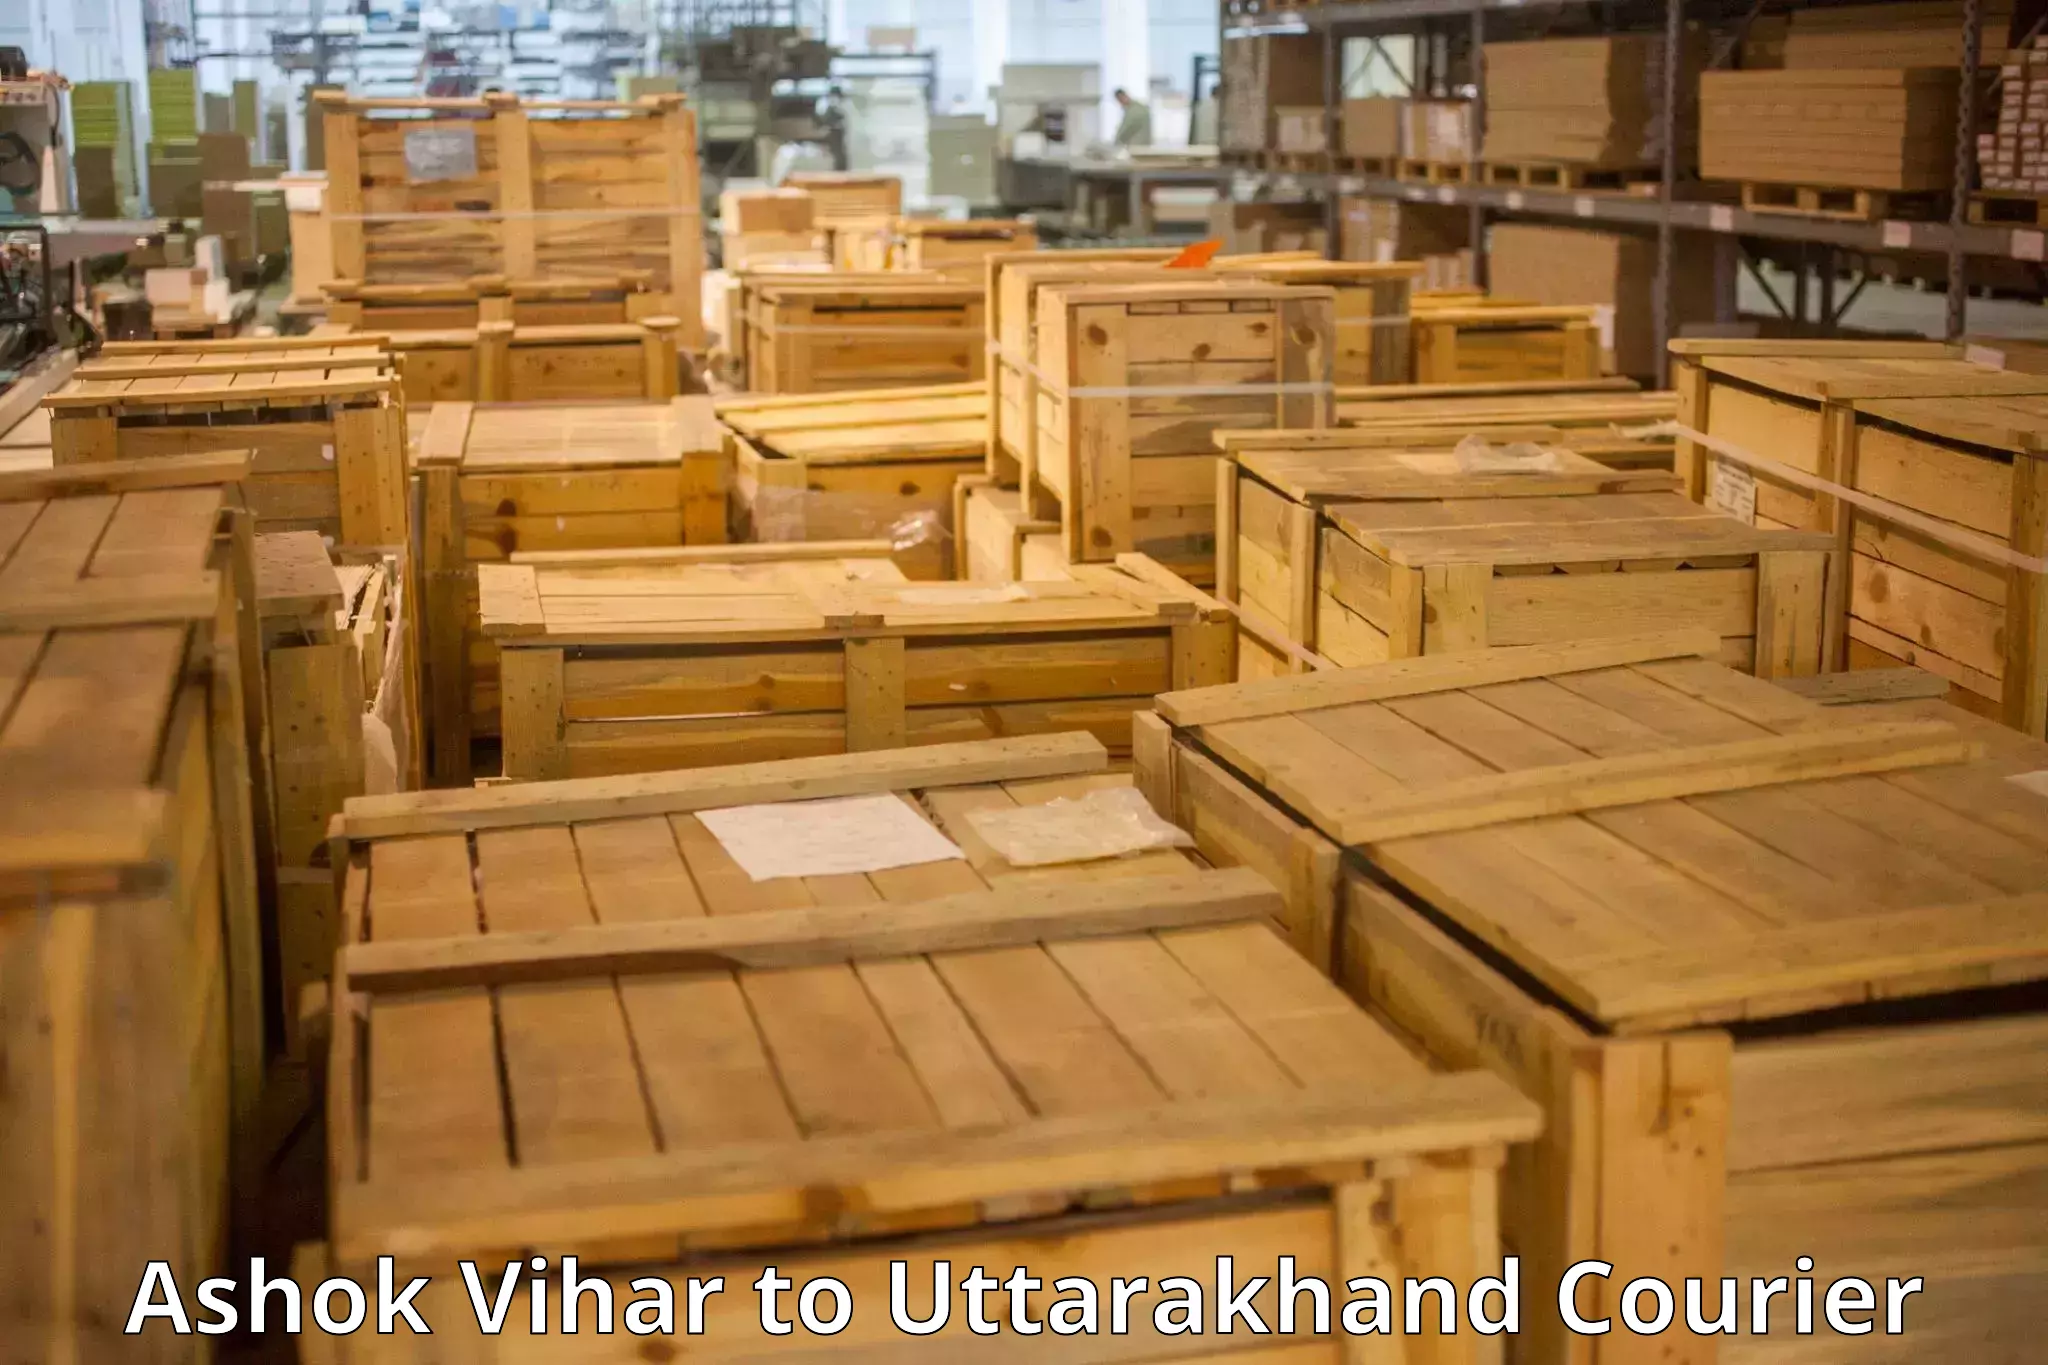 Baggage transport innovation Ashok Vihar to Uttarakhand